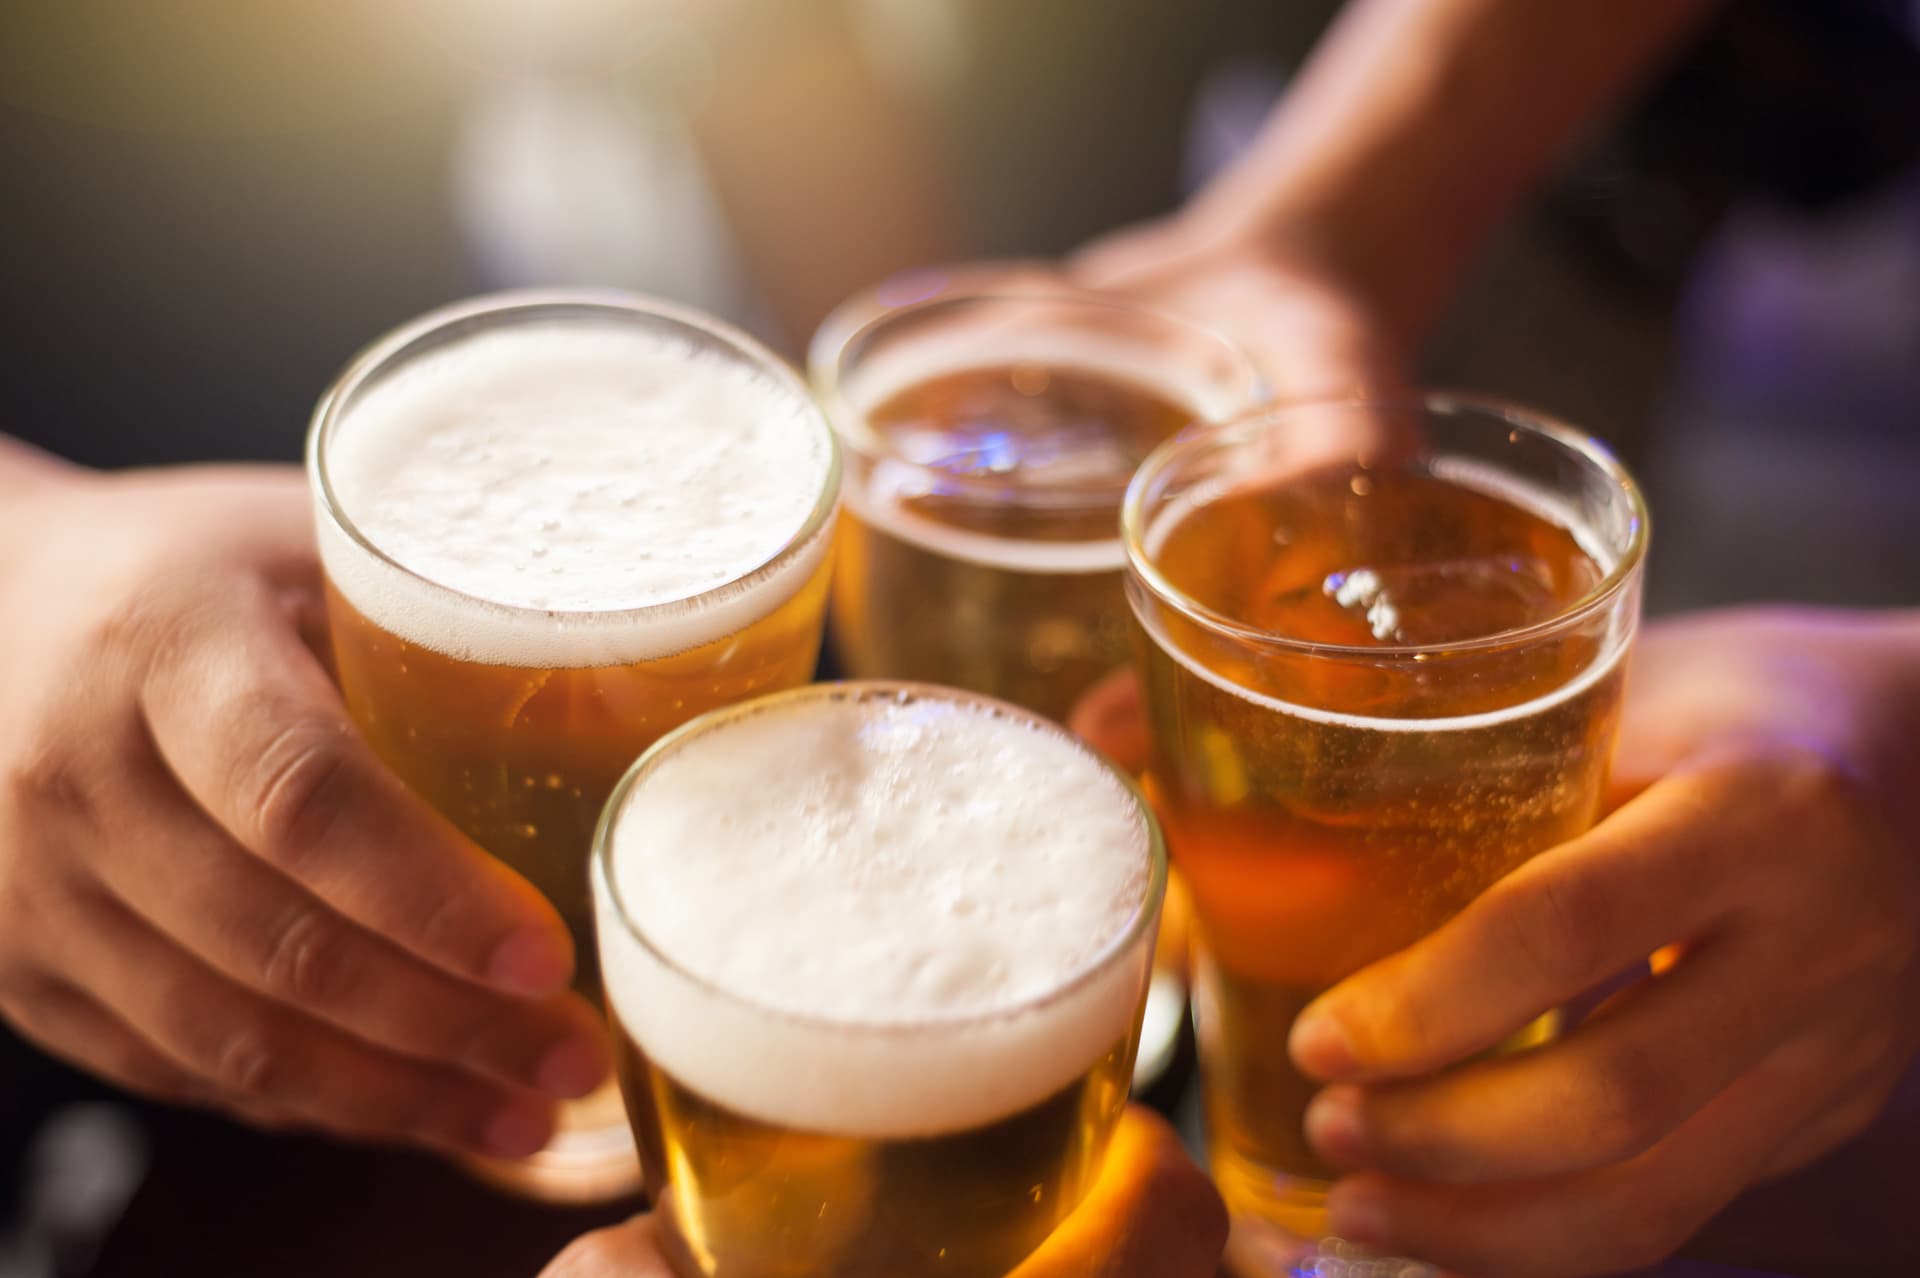 Cervezas y tapas de calidad en O Porriño | Ácrono Beer House